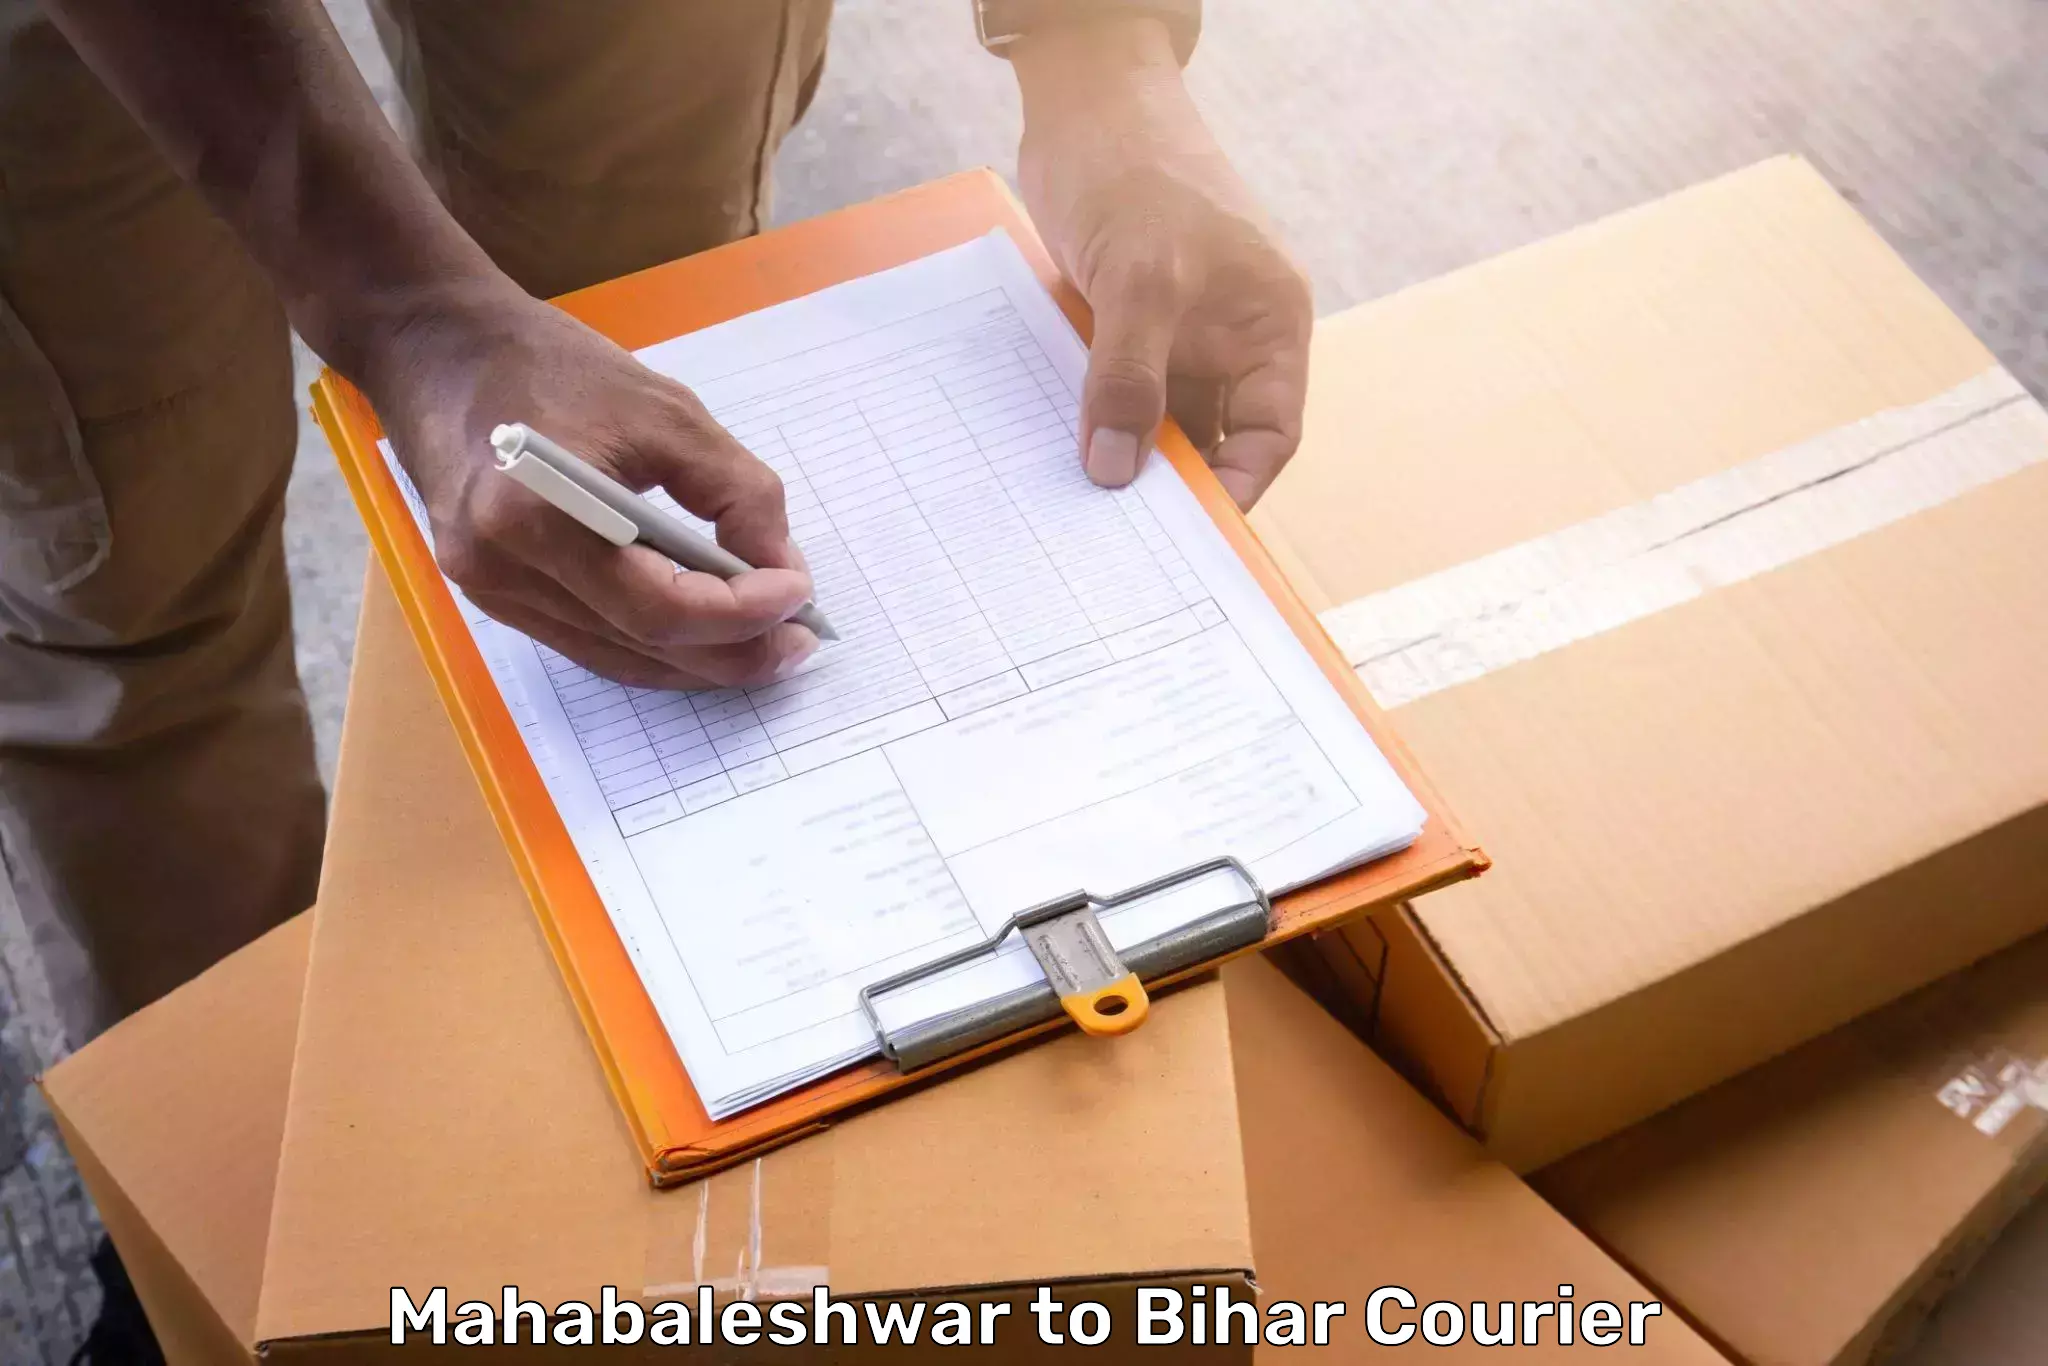 Flexible luggage courier service Mahabaleshwar to Vaishali